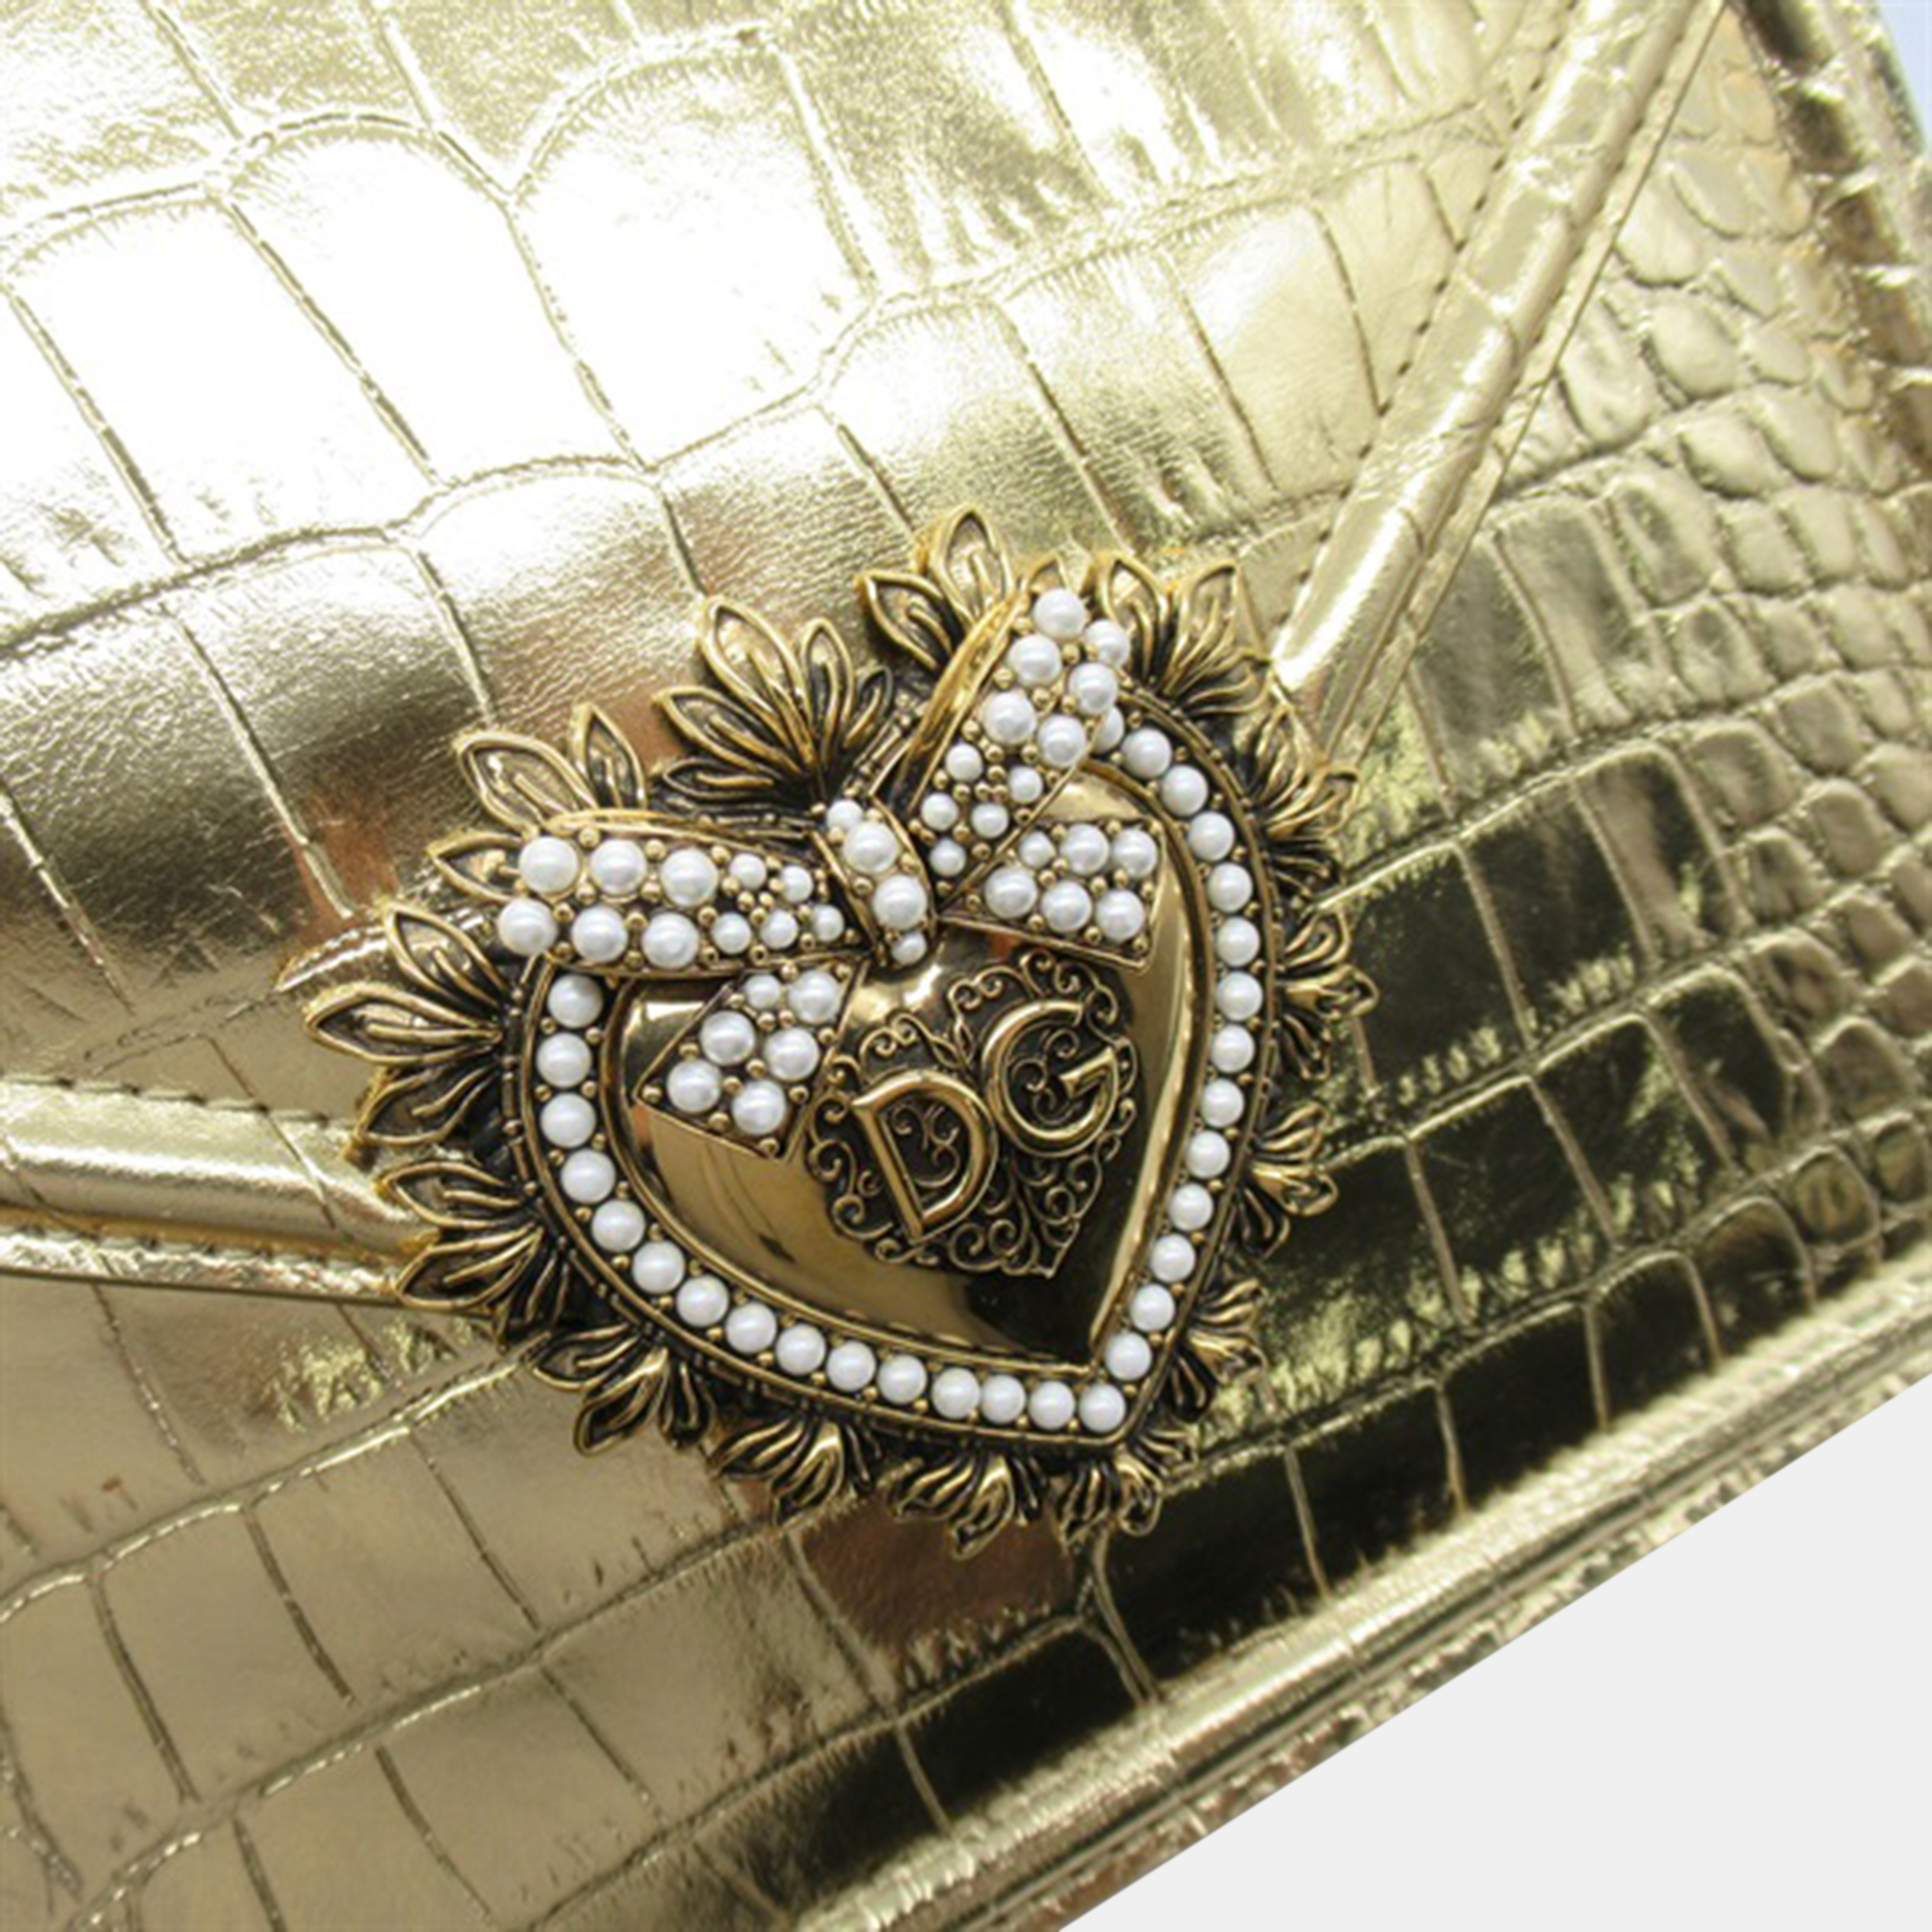 Dolce & Gabbana Gold Embossed Leather Devotion Shoulder Bag